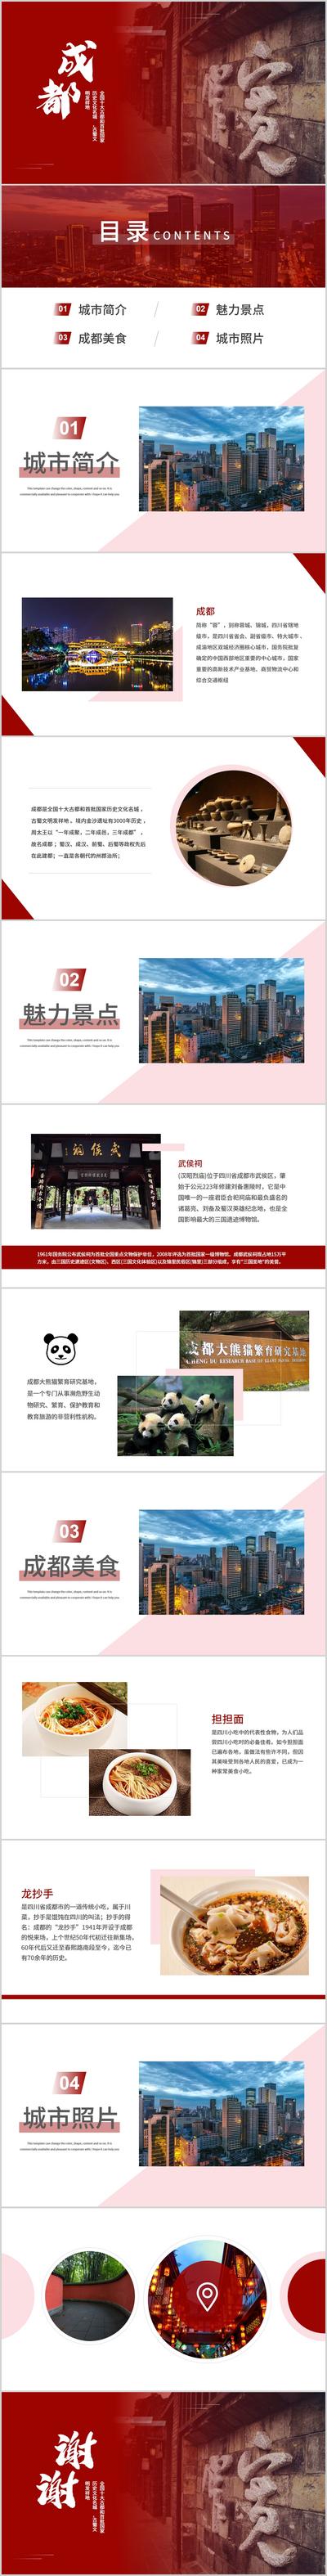 南门网 广告 海报 城市 PPT 成都 熊猫 汇报 总结 数据 美食